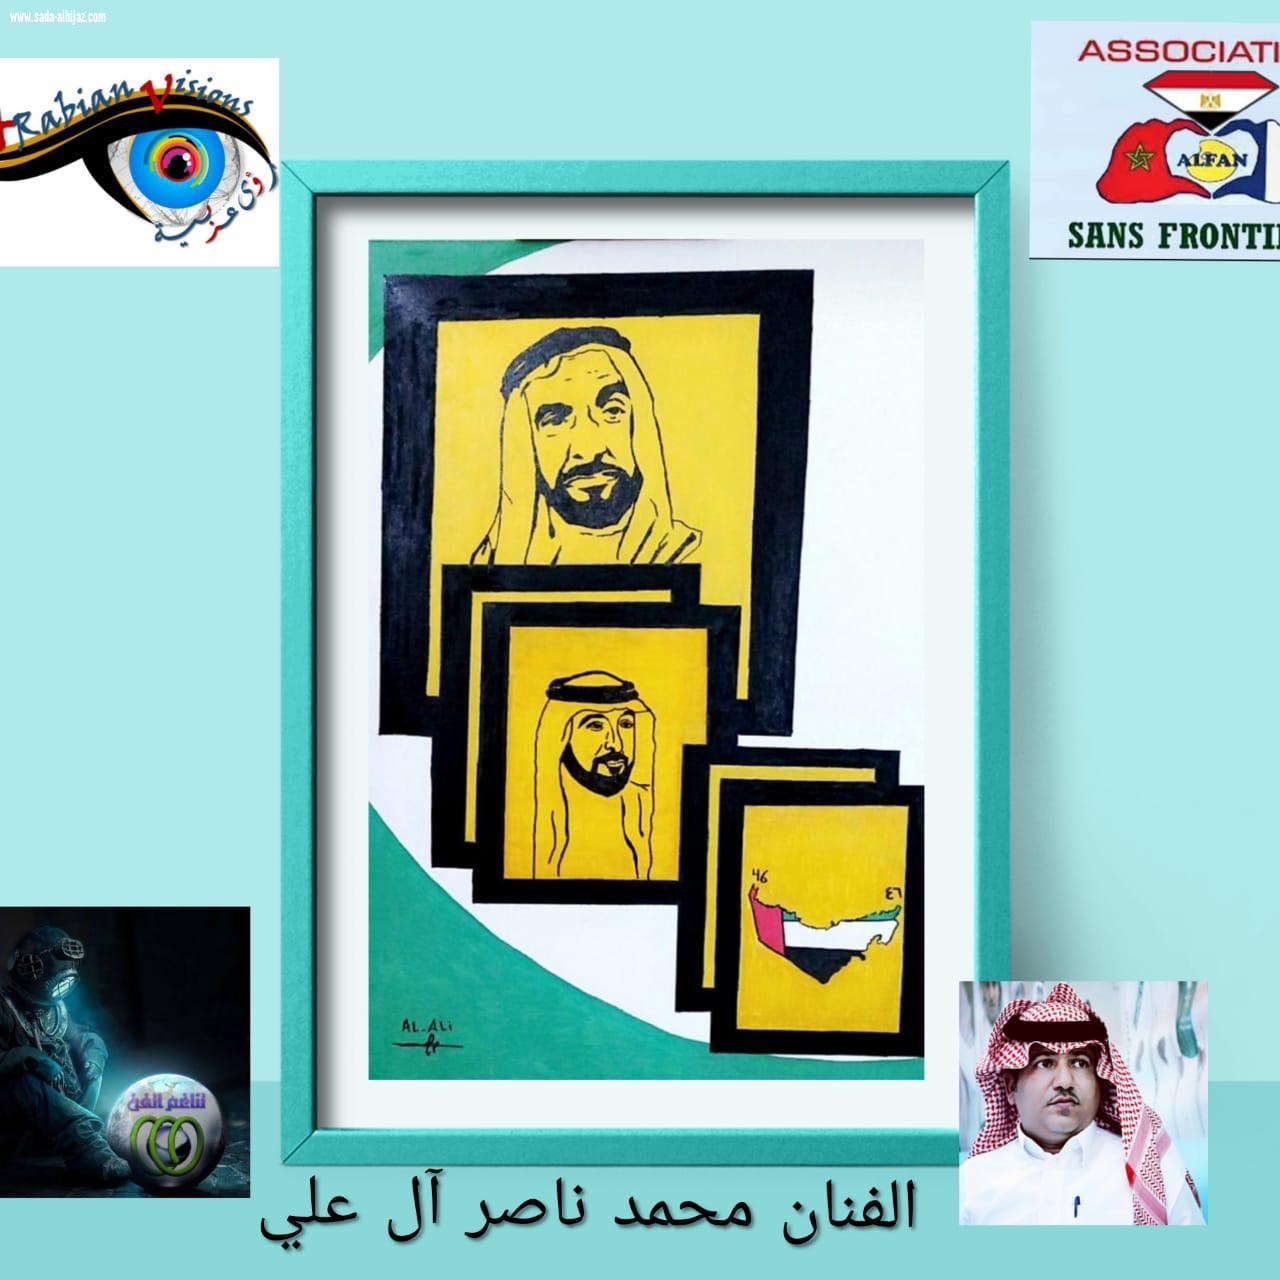 جمعية الفن بلاحدود تكرم الفنان التشكيلي محمد آل علي